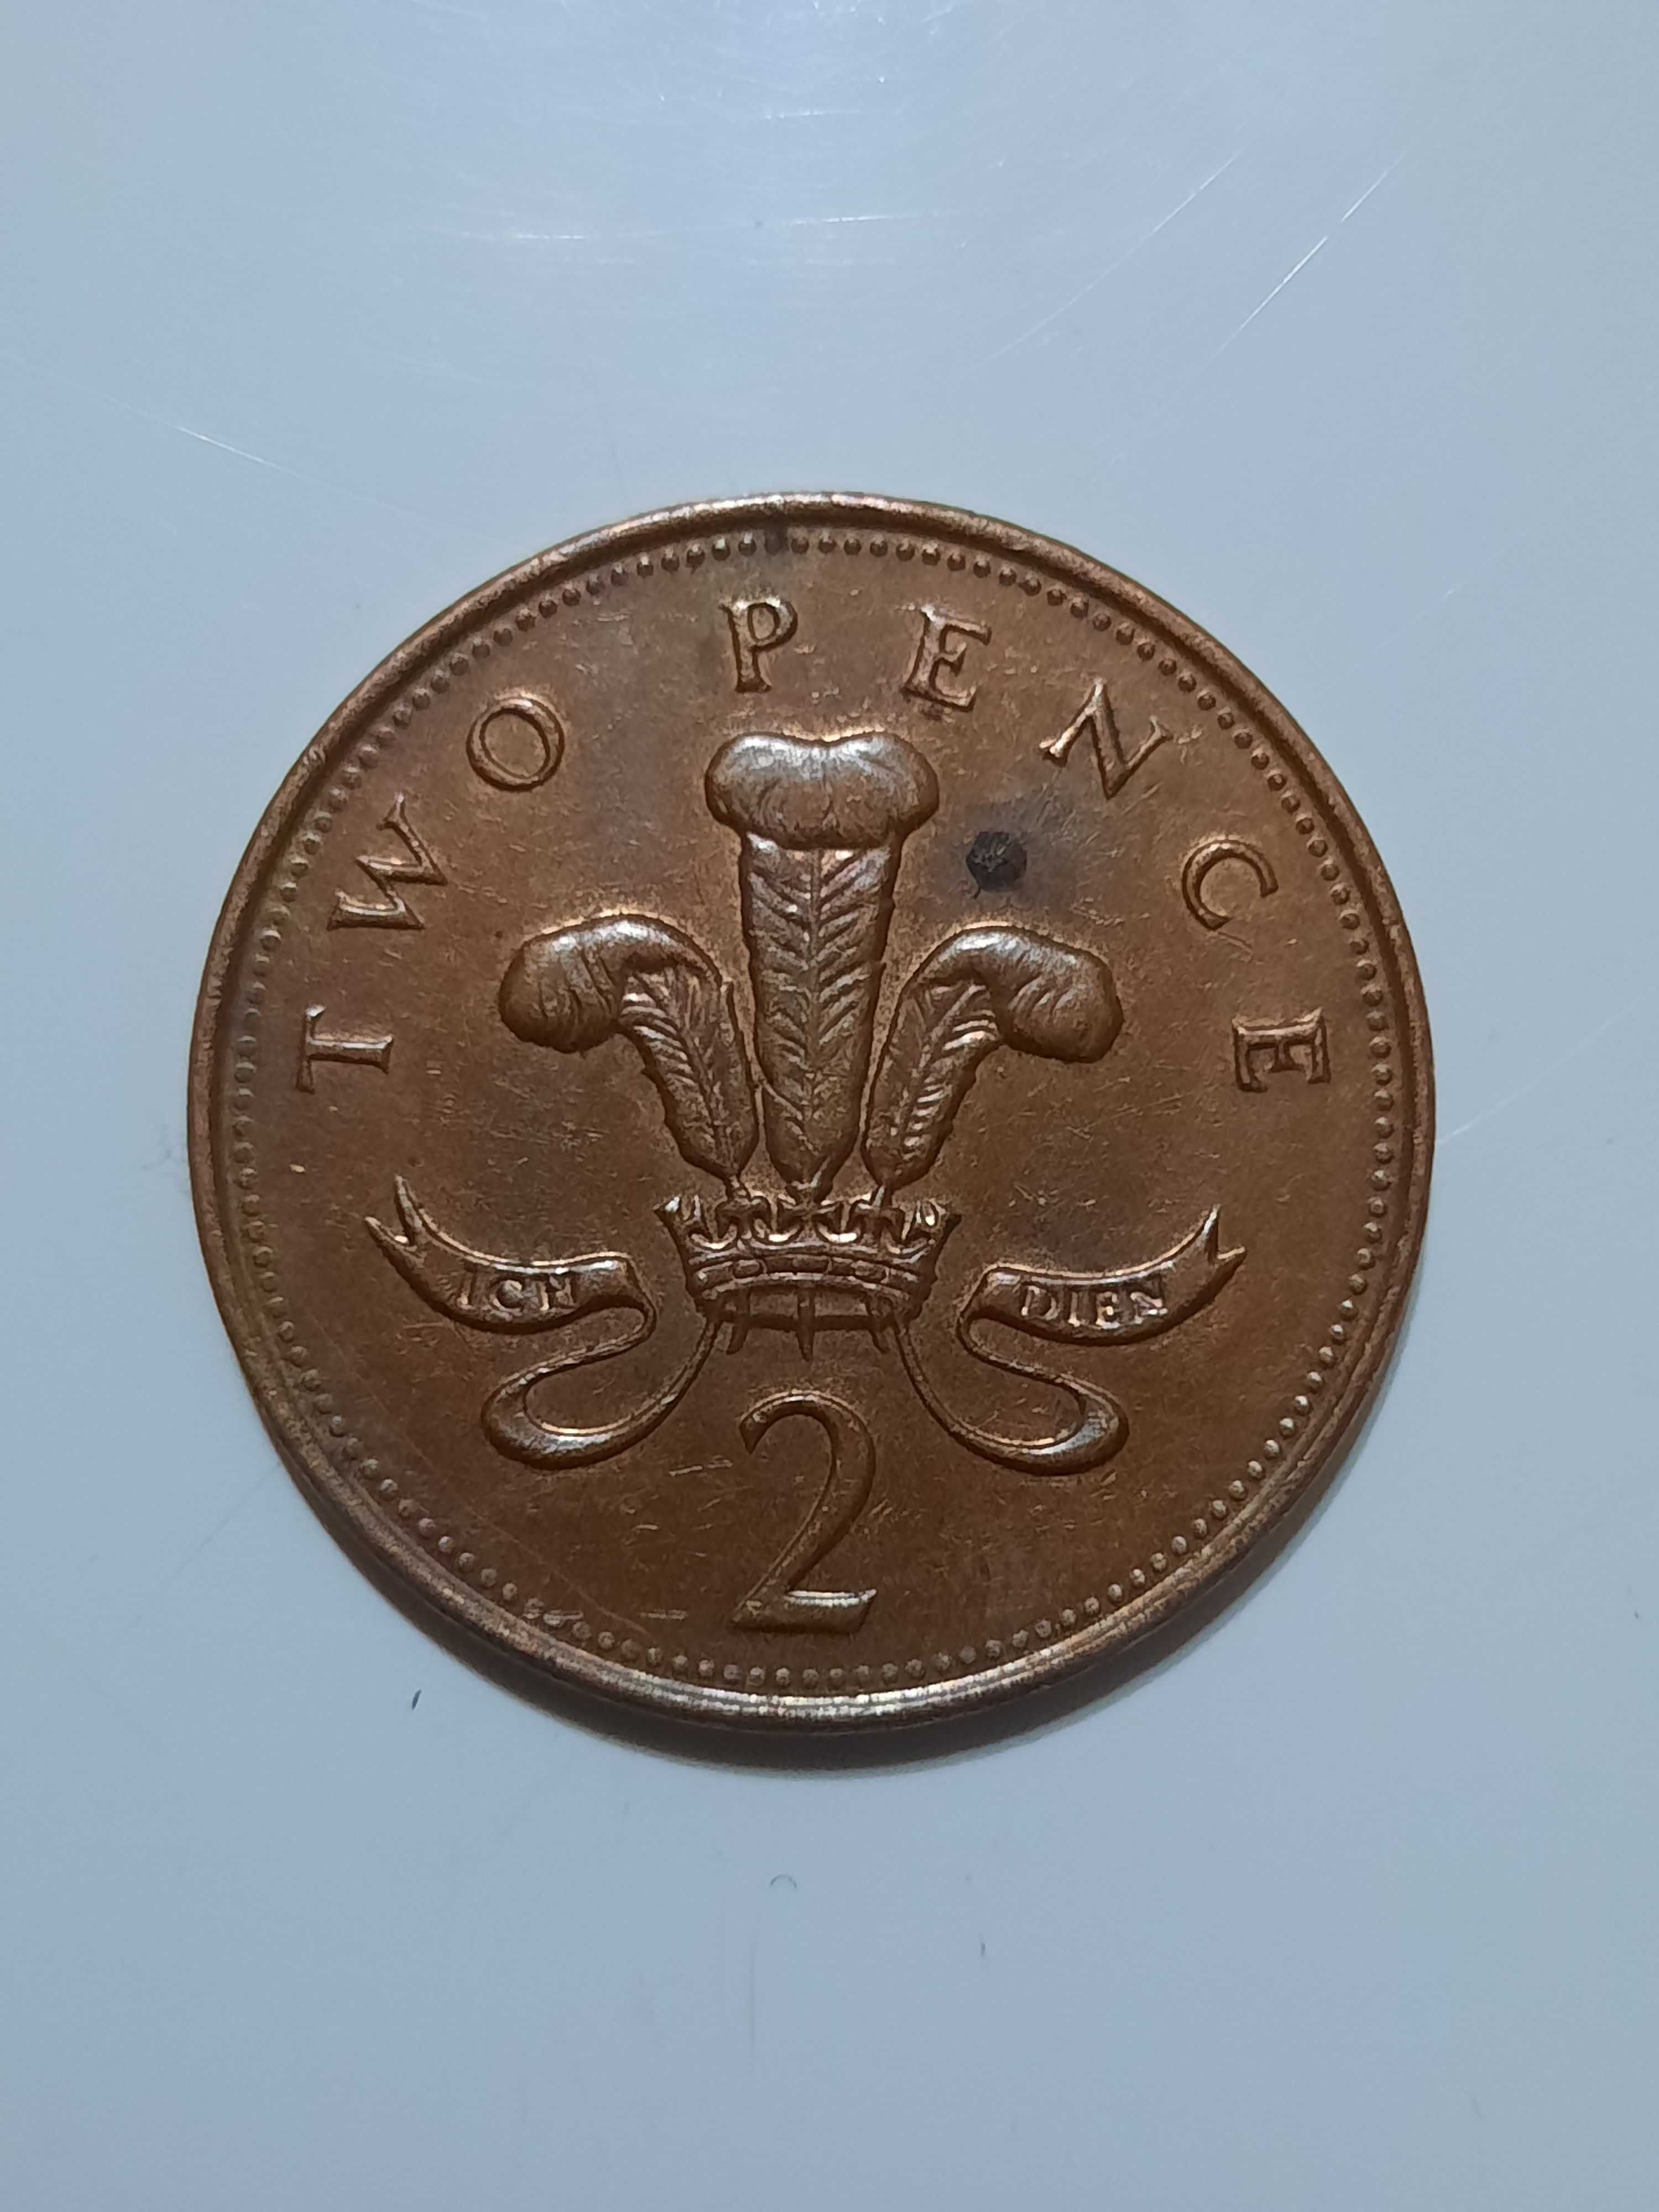 2 new pence 1971 Elizabeth ll